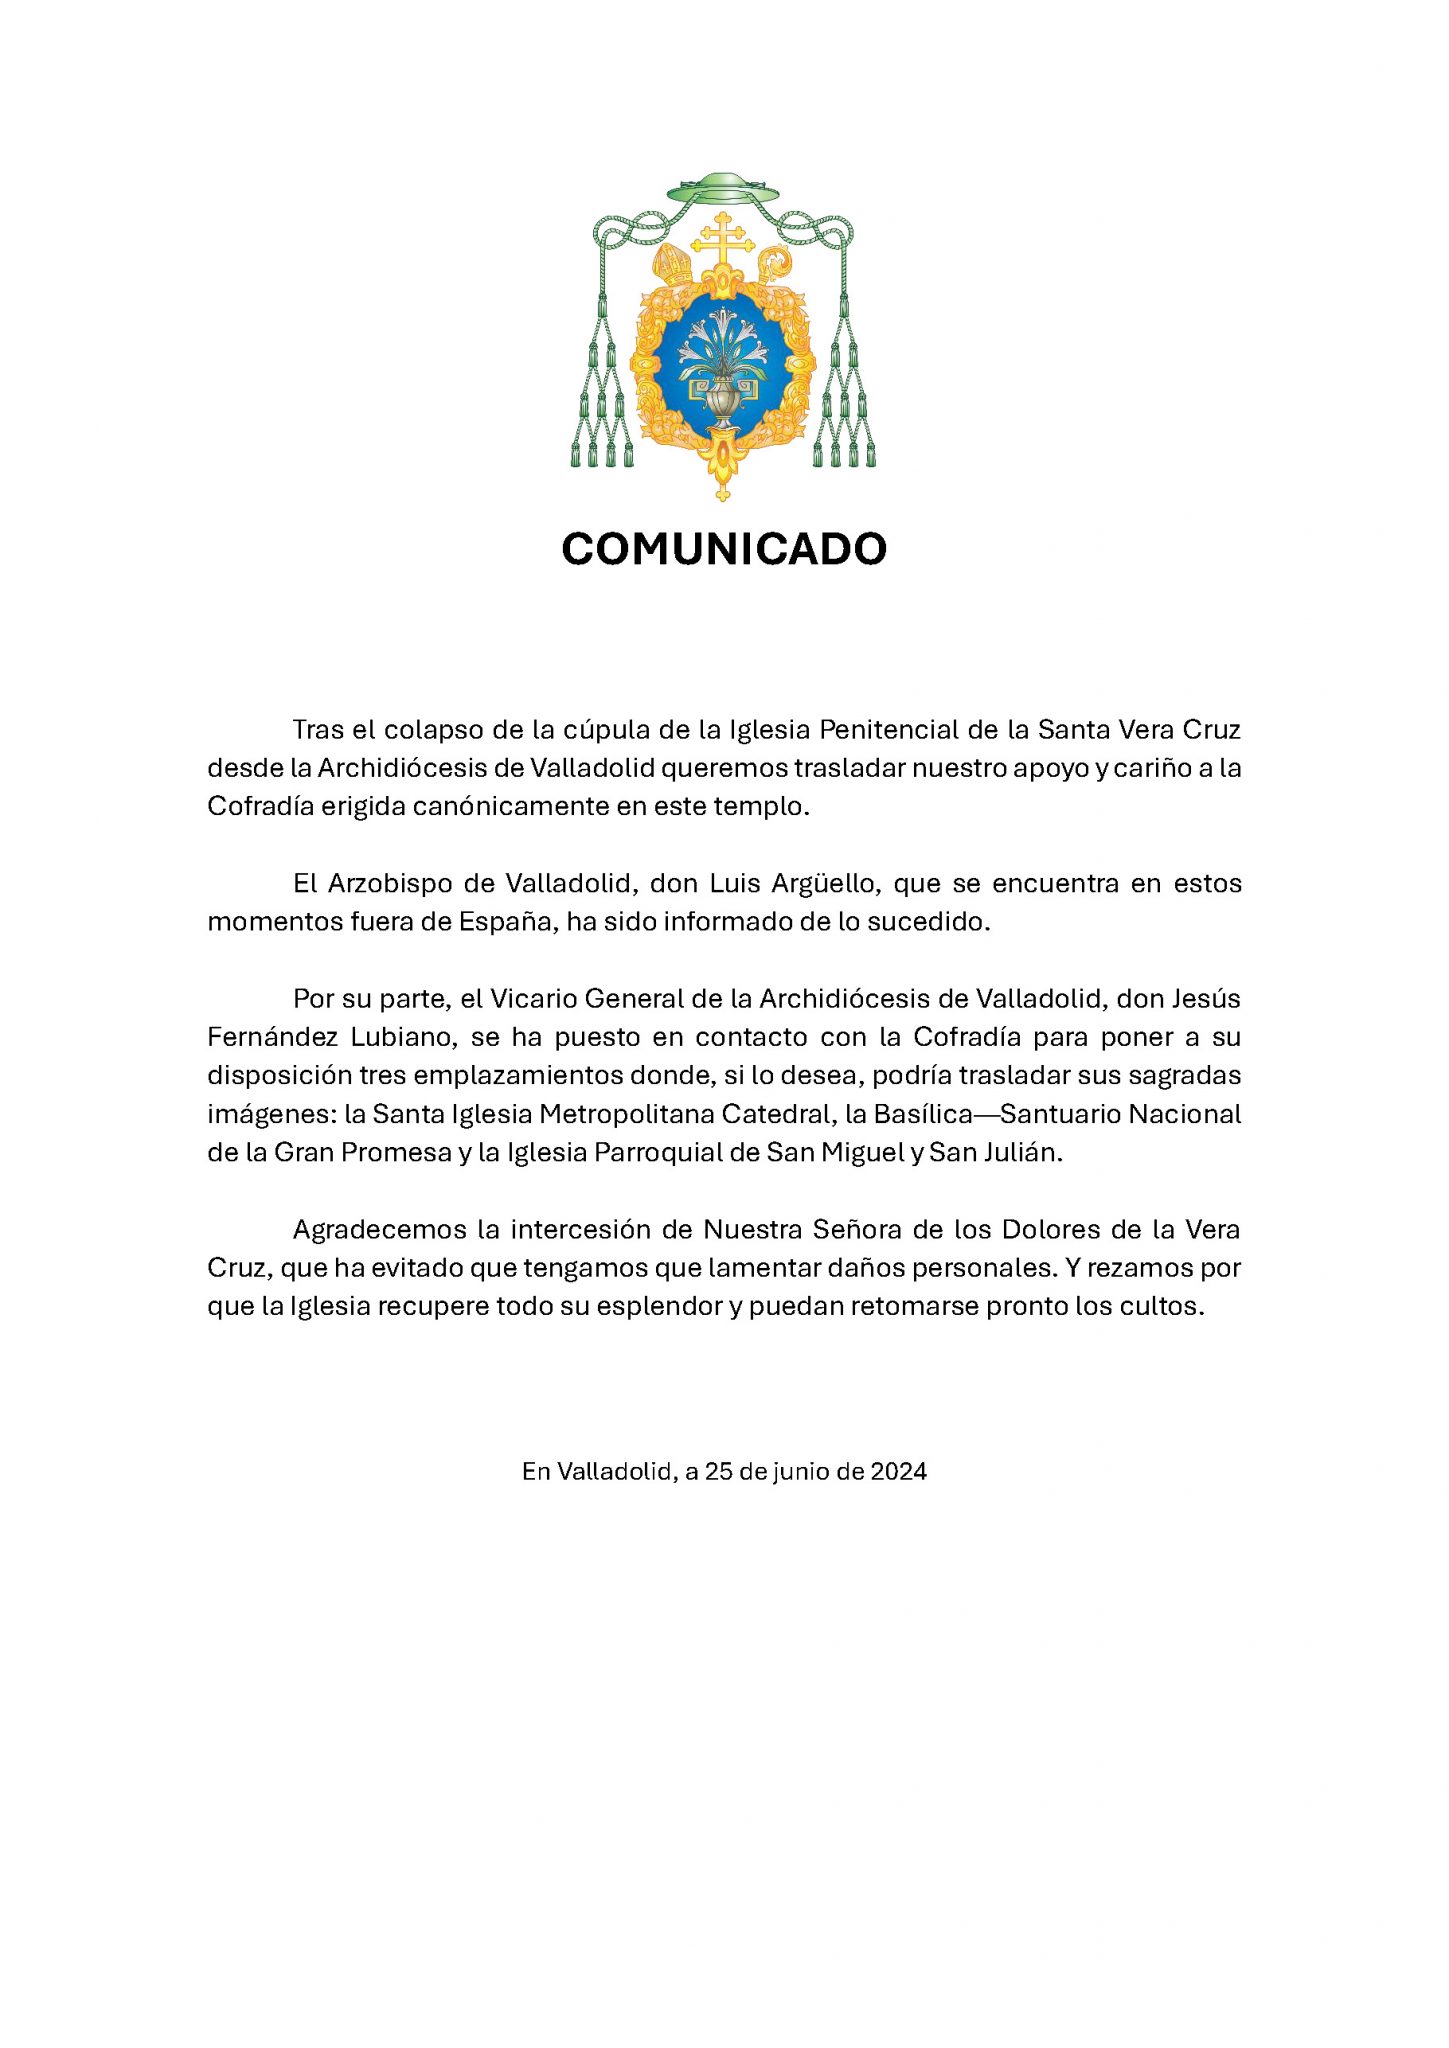 Comunicado de apoyo de la Archidiócesis de Valladolid a la Cofradía Penitencial de la Santa Vera Cruz tras el colapso de la cúpula de su Iglesia